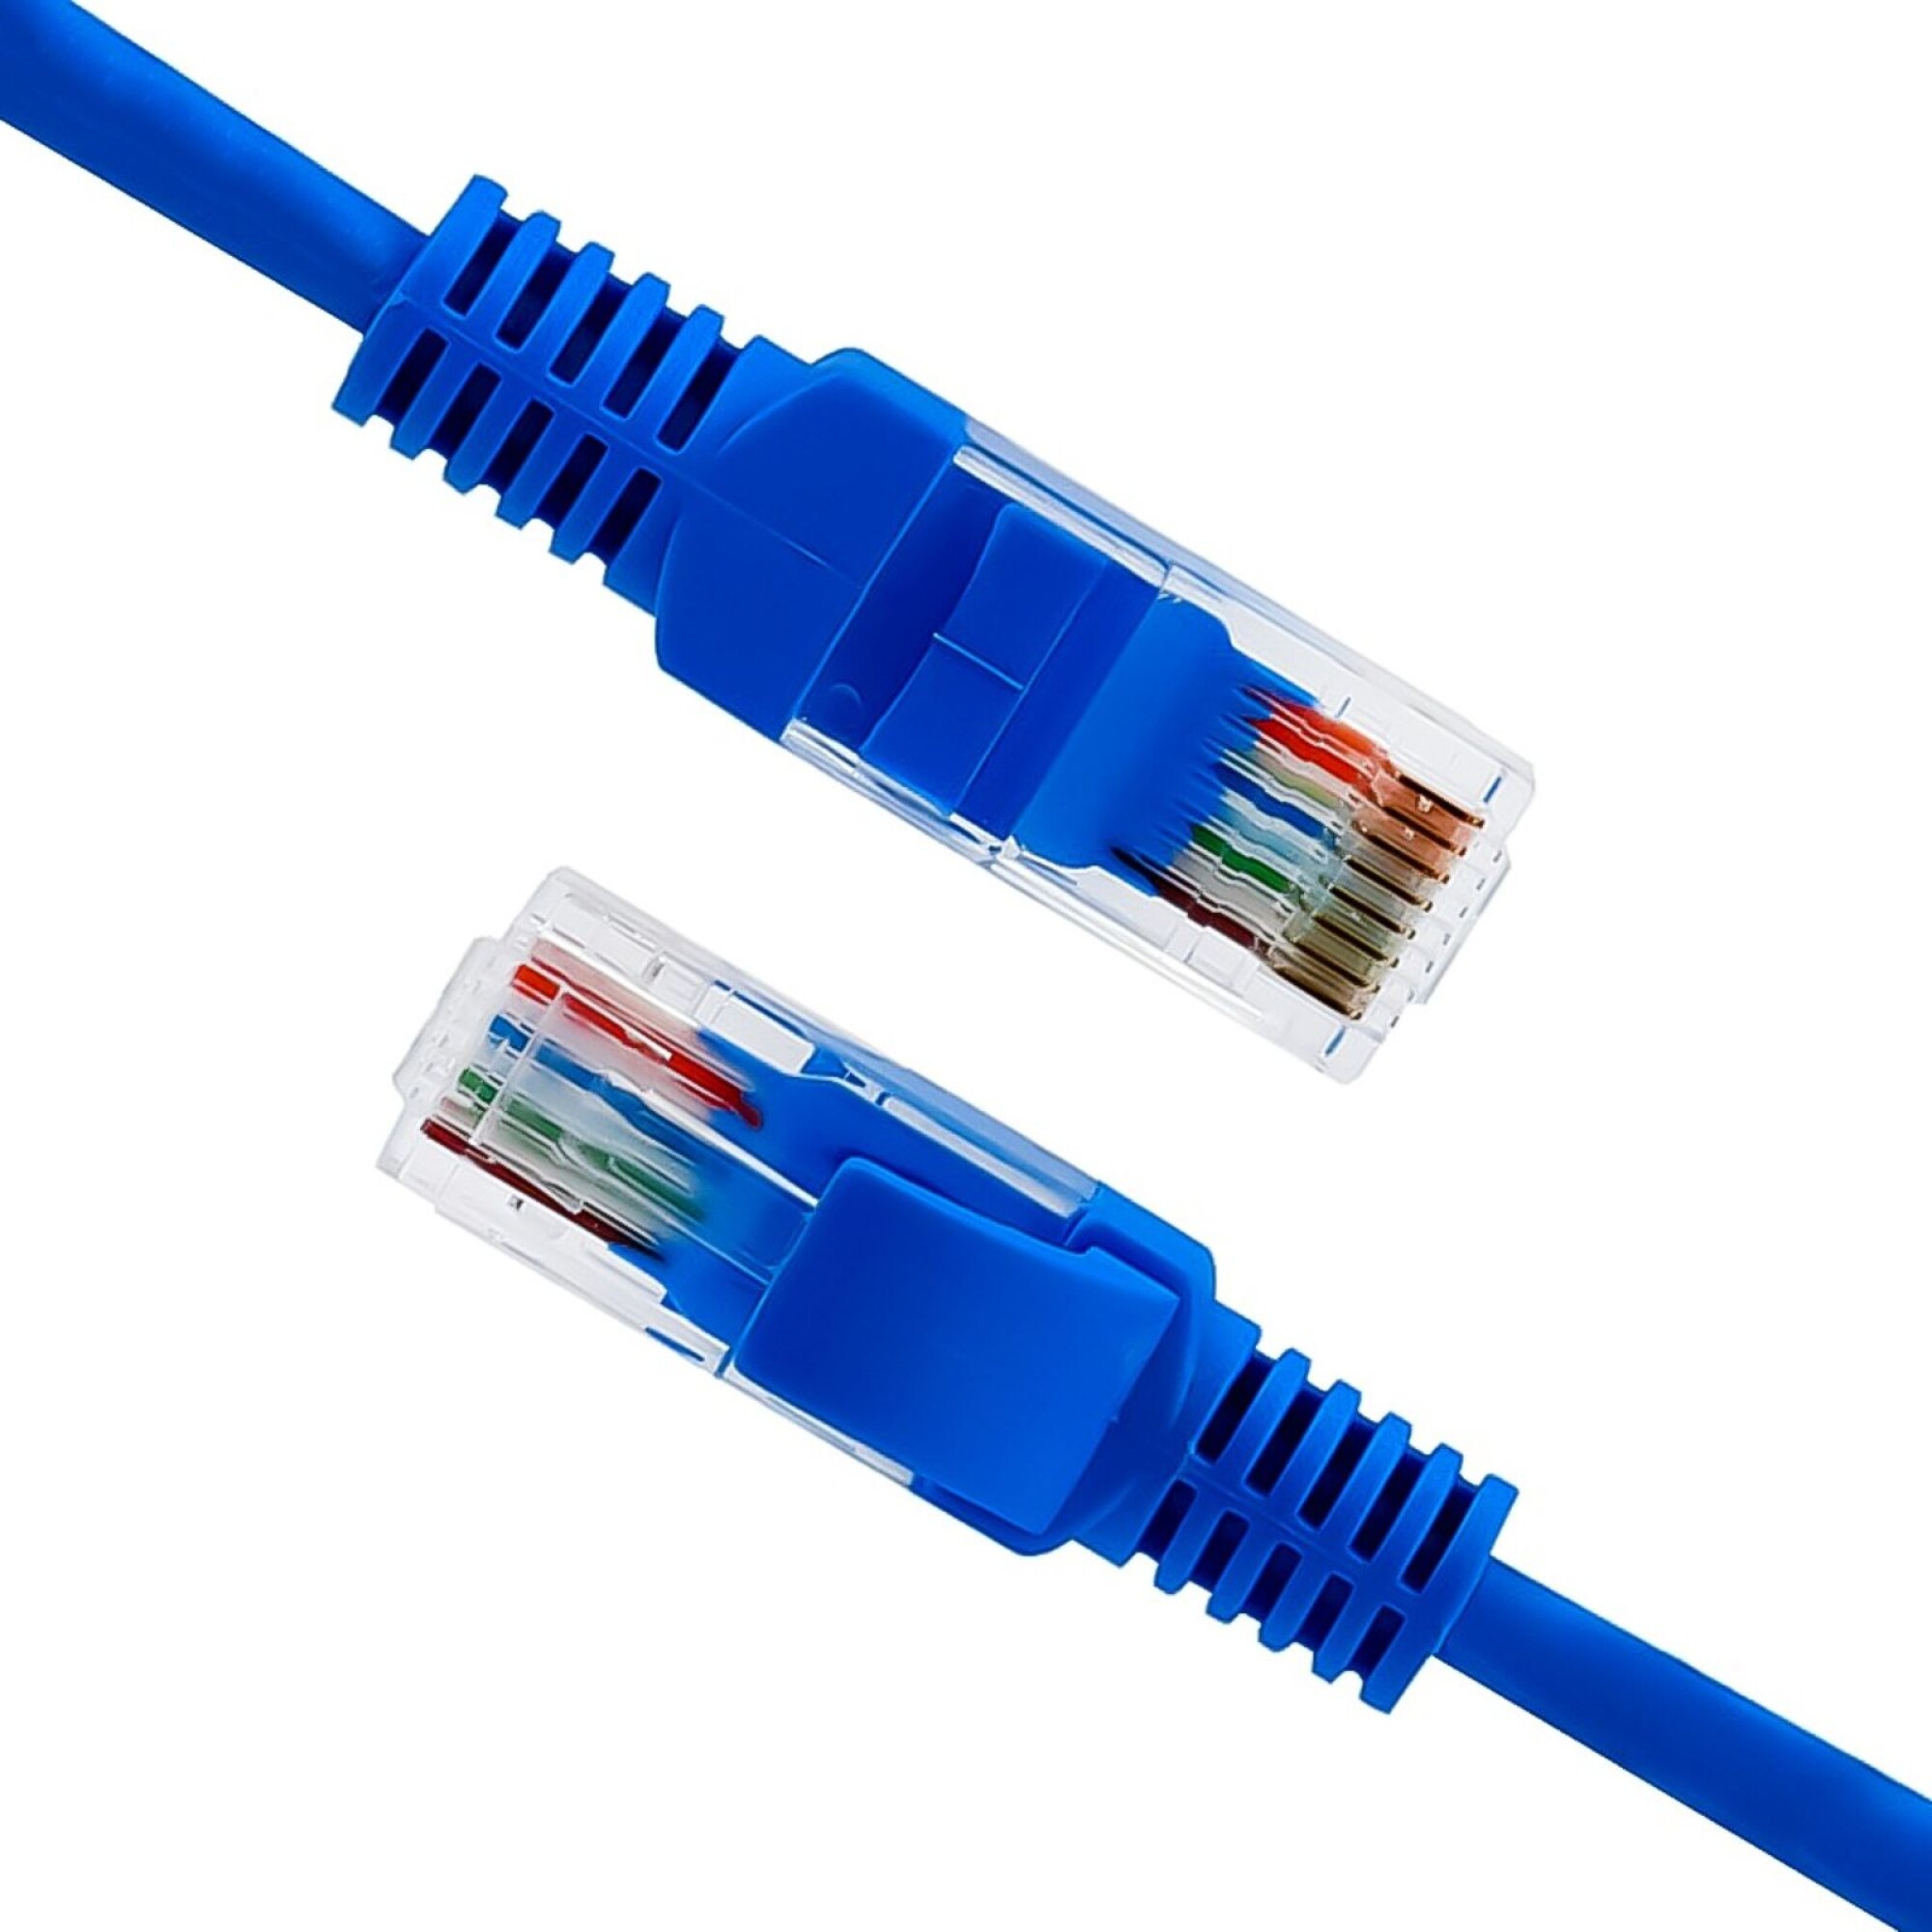 Cable De Internet 20 Metros Largo - Cable Ethernet Lan 20mt - $ 25.000